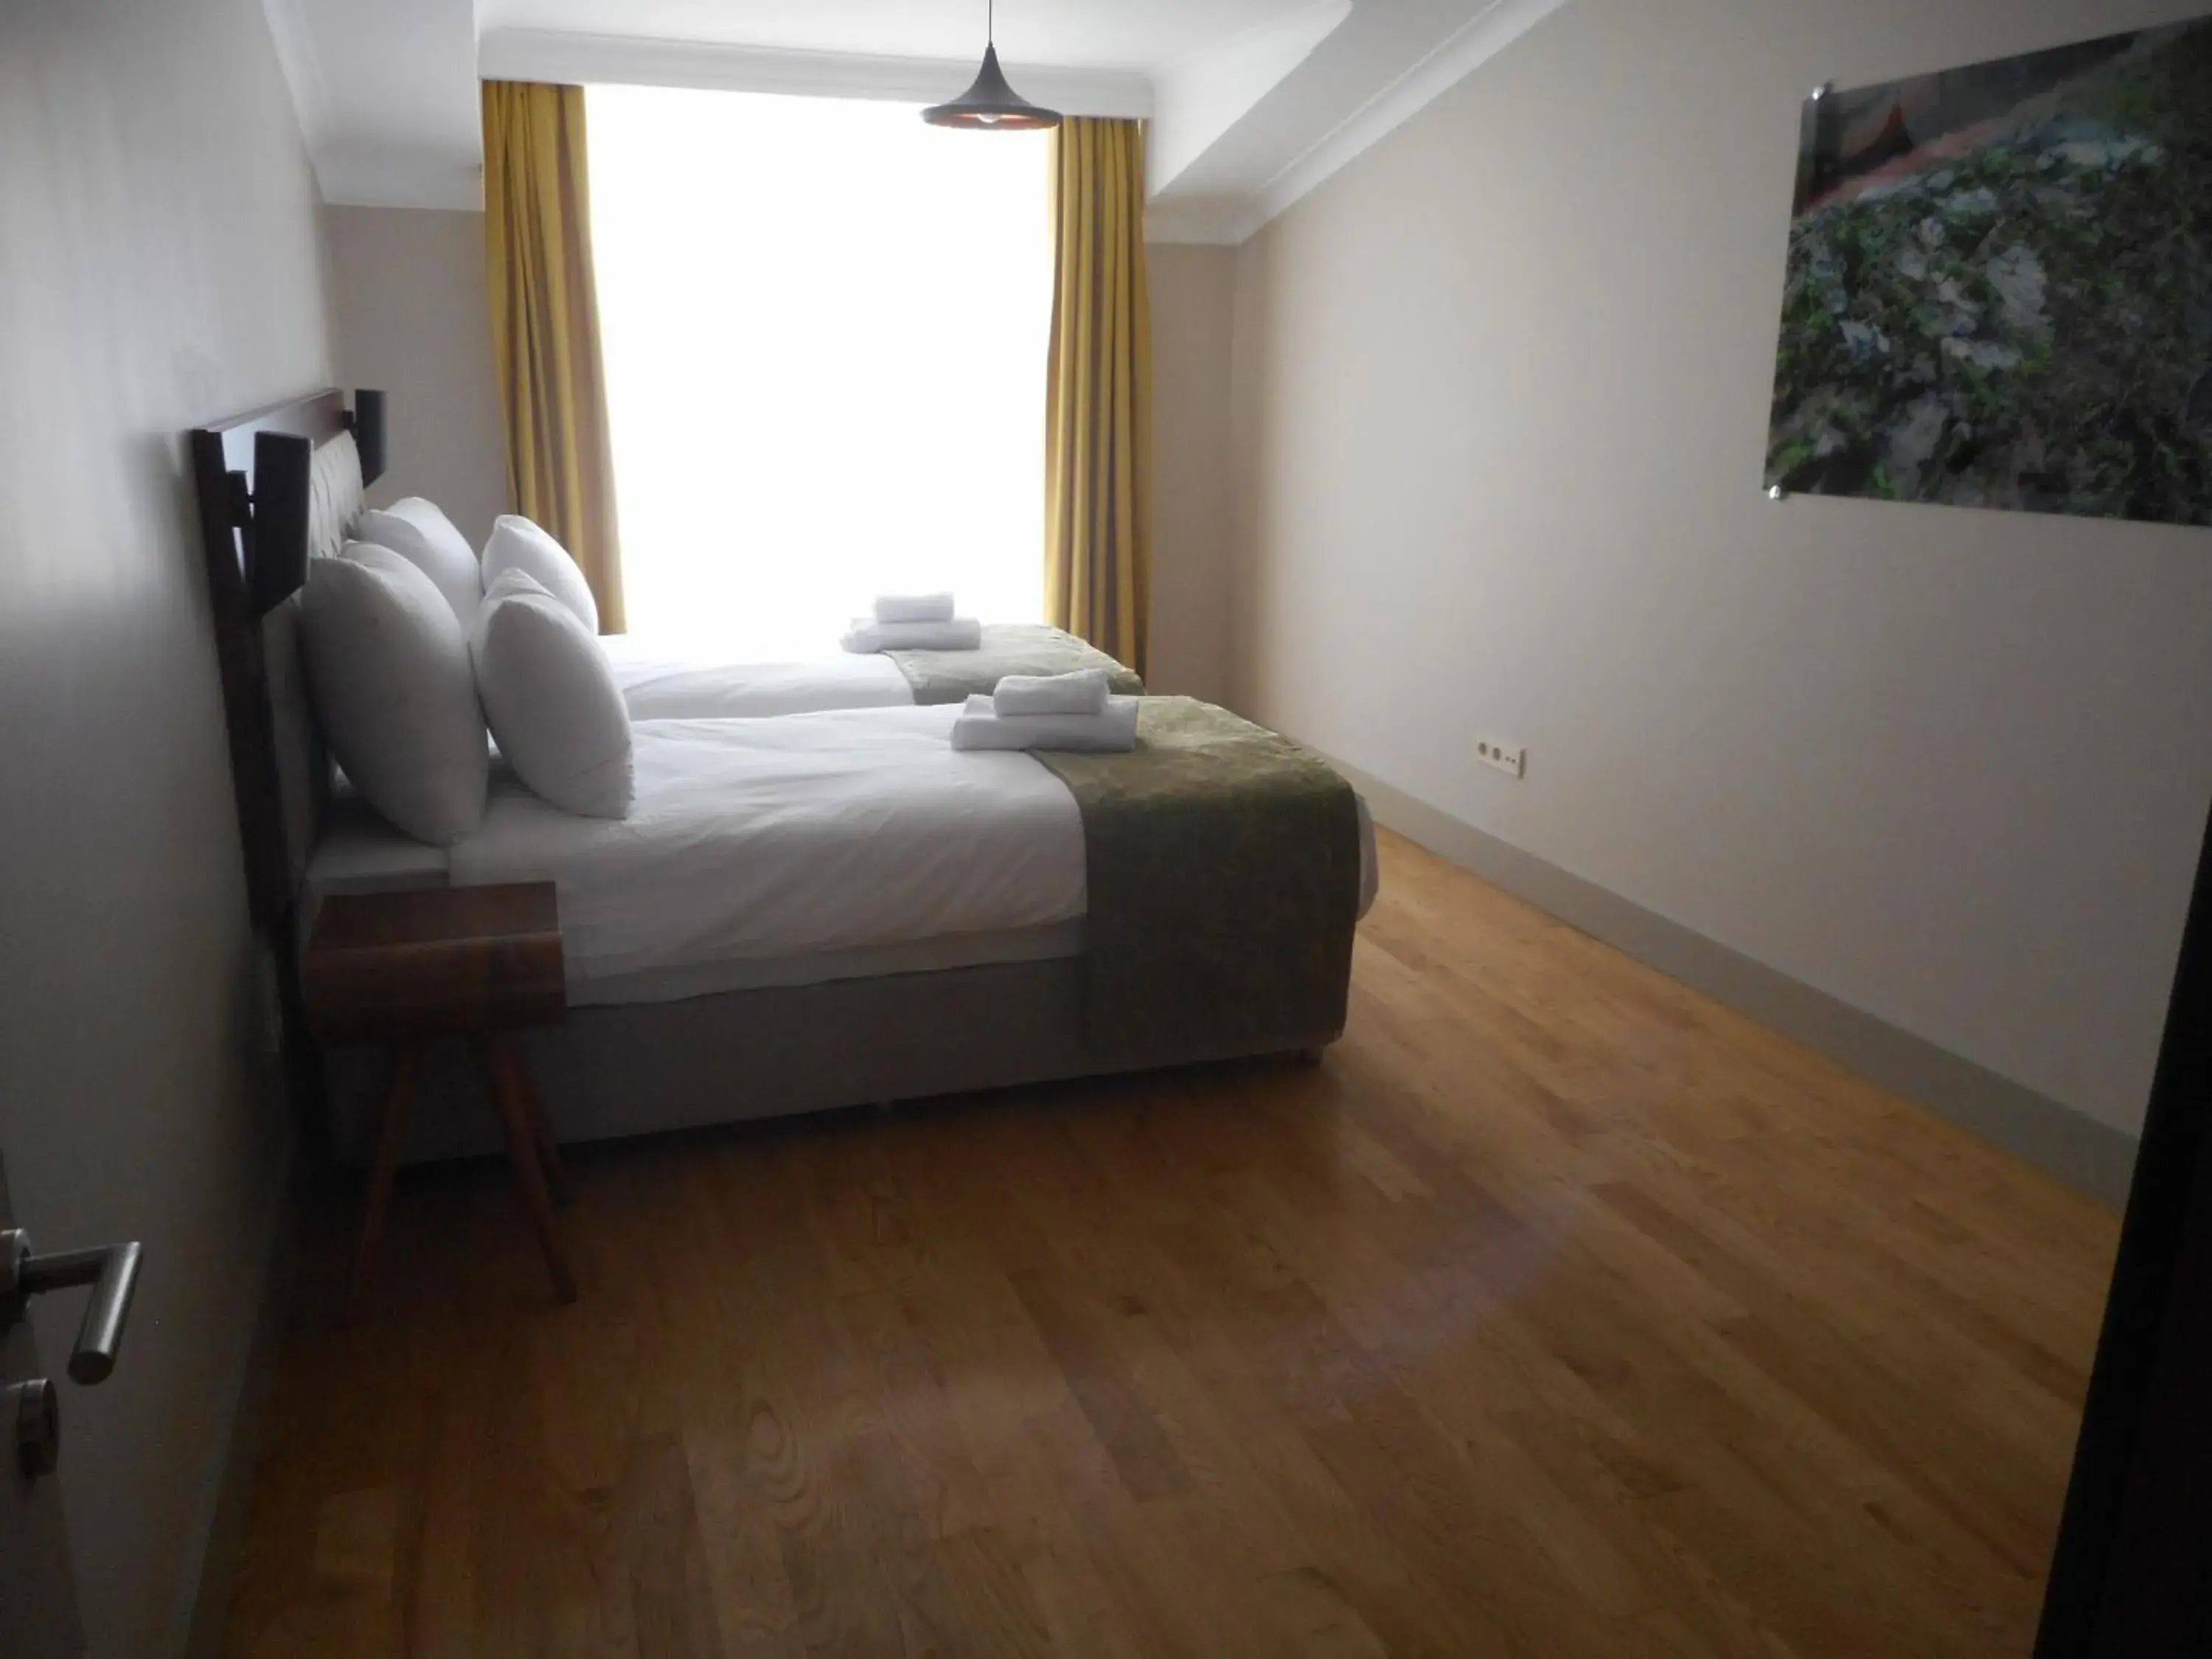 Bedroom, Room Photo in Keten Suites Taksim